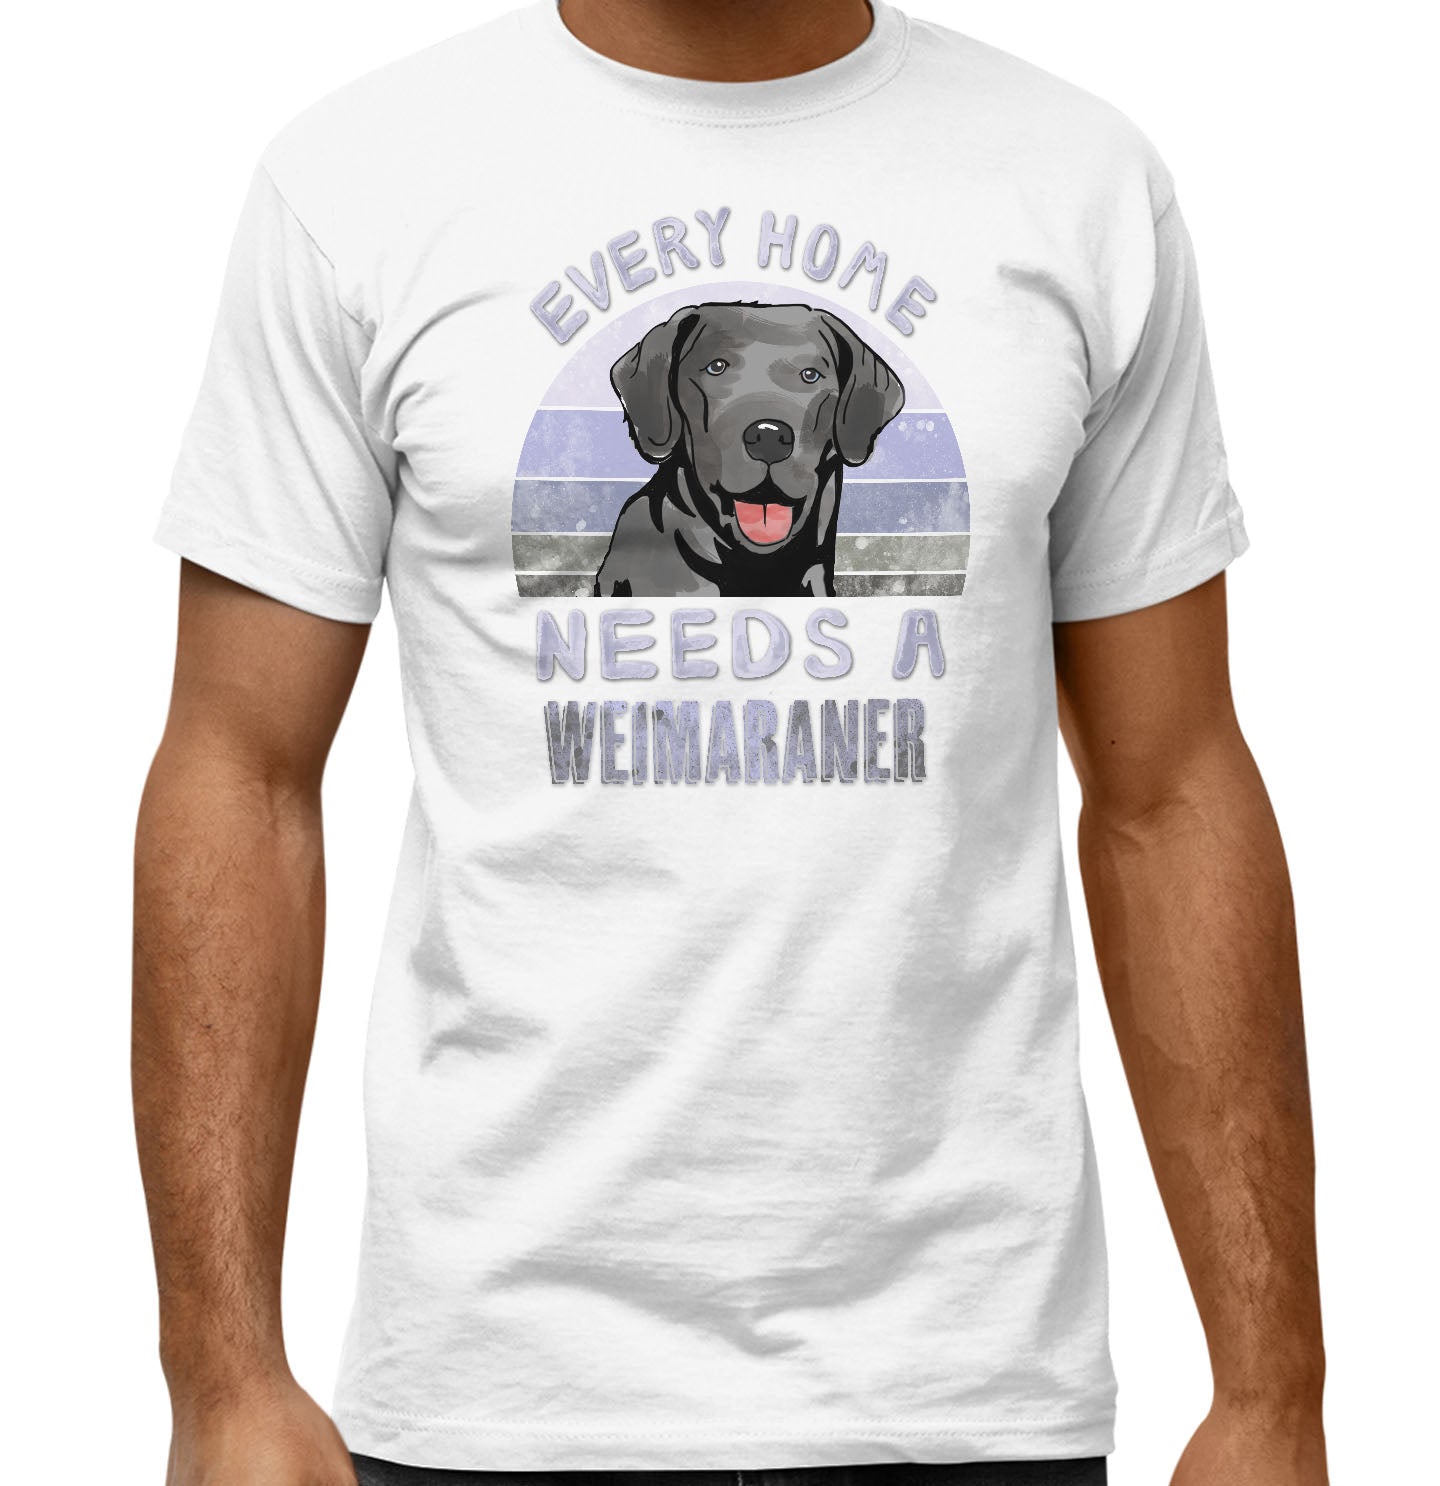 Every Home Needs a Weimaraner - Adult Unisex T-Shirt